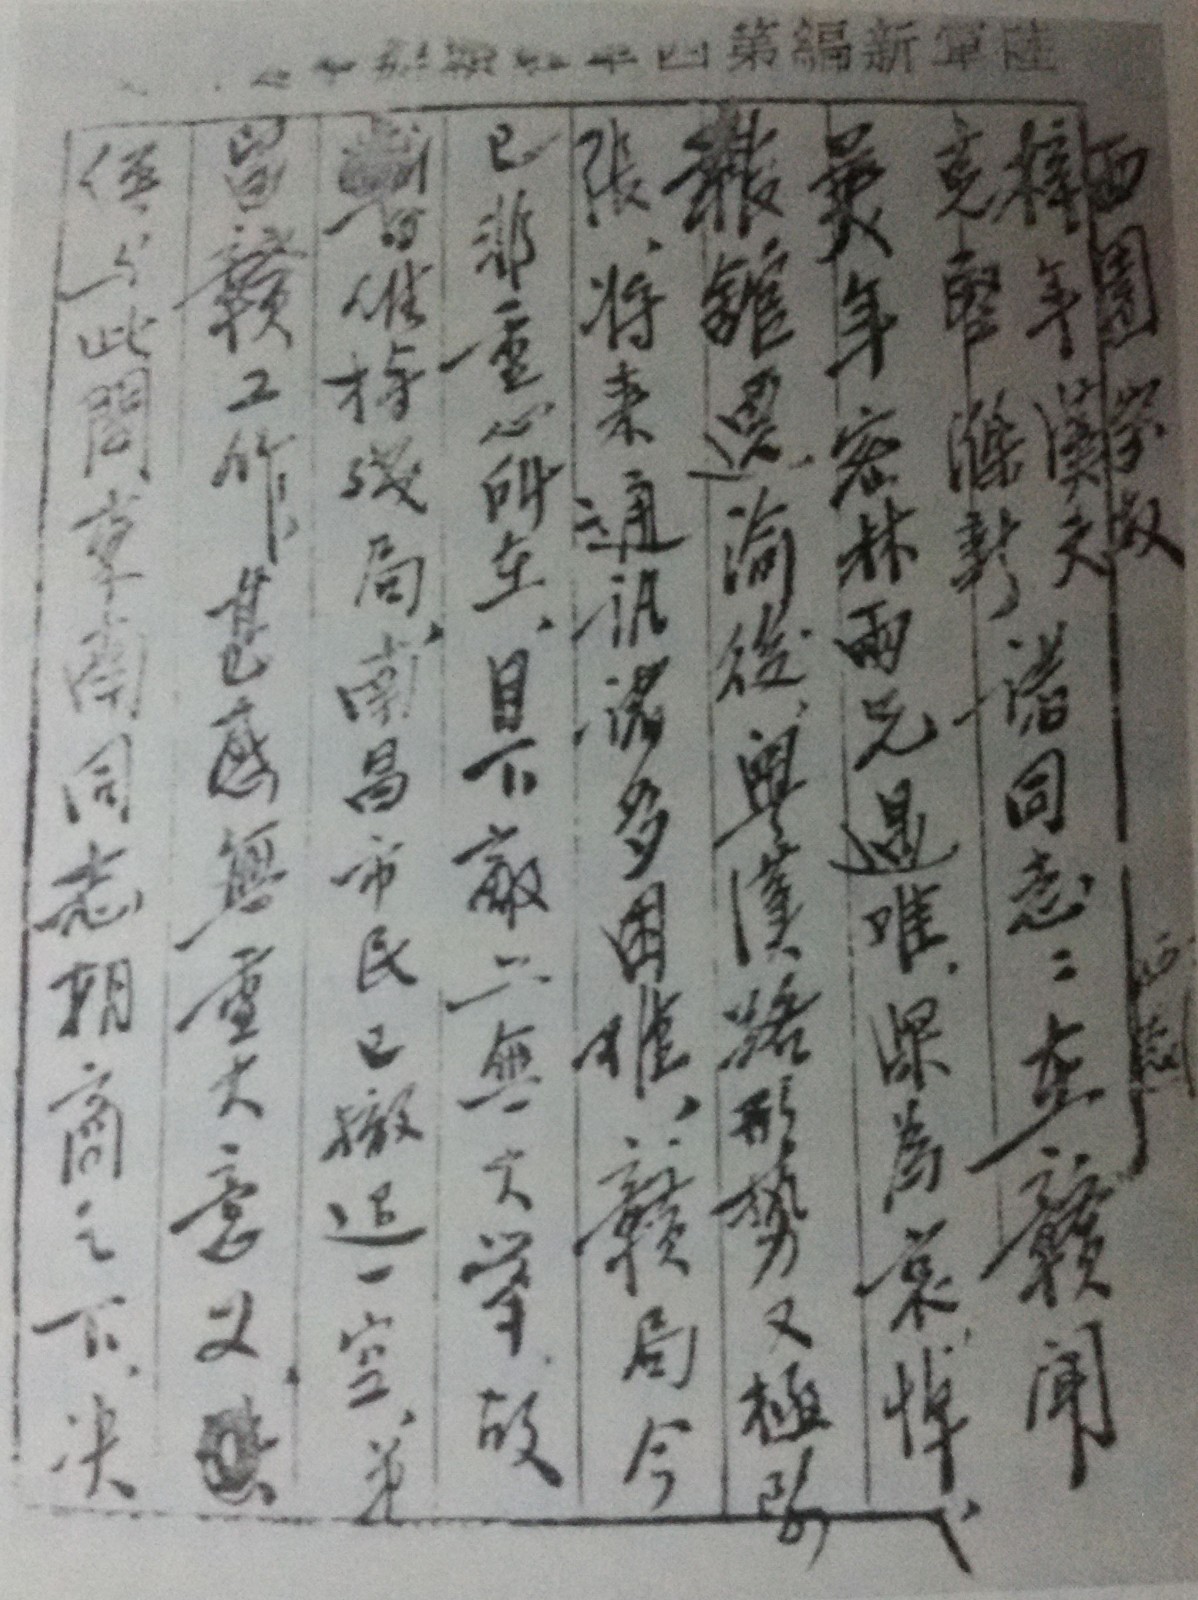 石西民以新华日报记者身份在江西采访时给报社领导的信.jpg